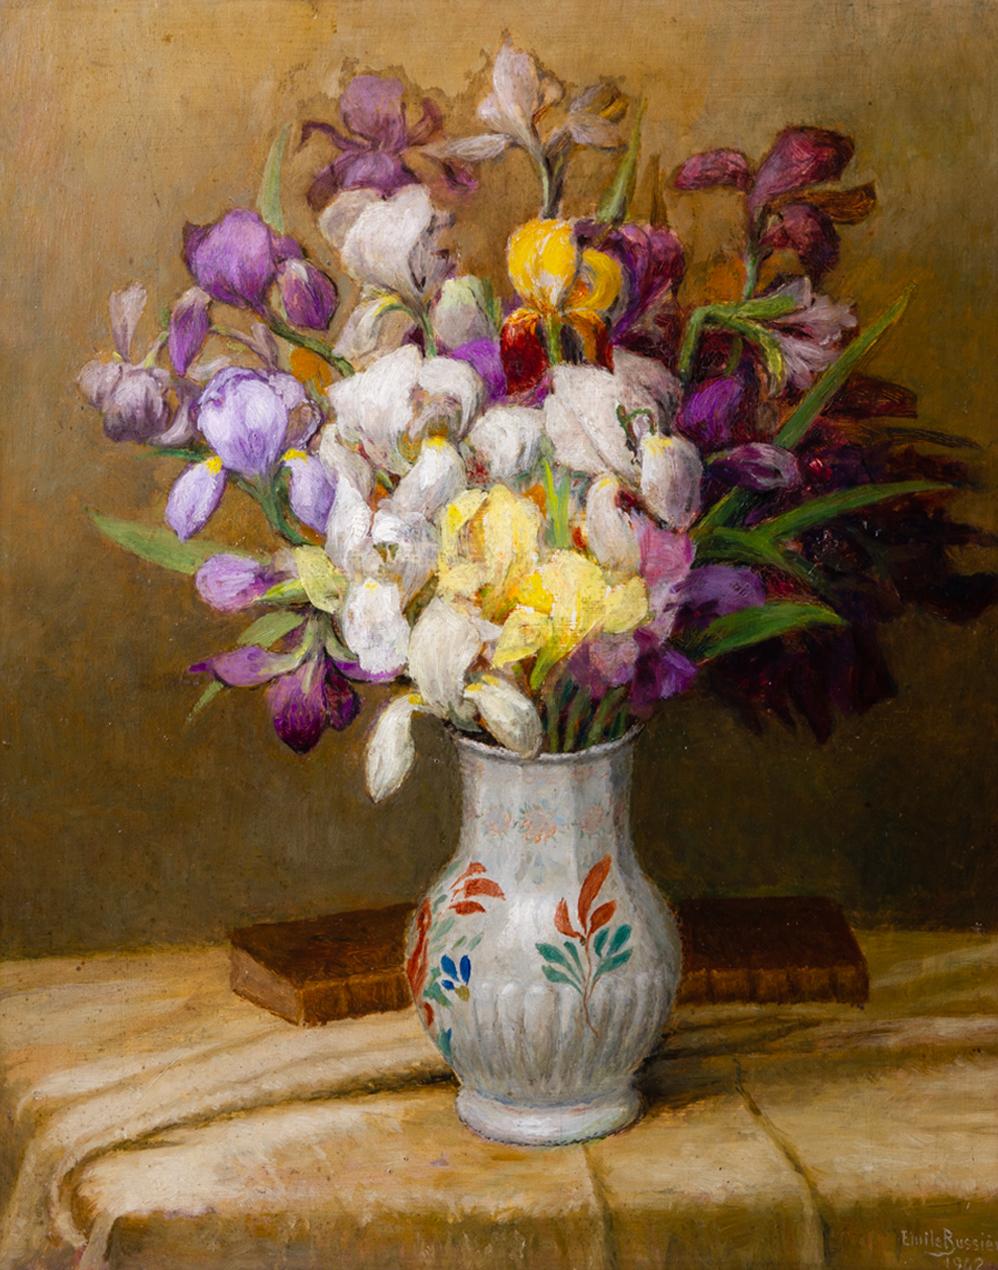 O/4898 -. Tableau ancien daté 1942 et signé par Eleg Bussière : un beau bouquet d'iris dans un vase - élégant et délicat - dans son cadre d'origine.  Si vous le souhaitez, vous pouvez utiliser le grand cadre élégant comme miroir, en laissant la